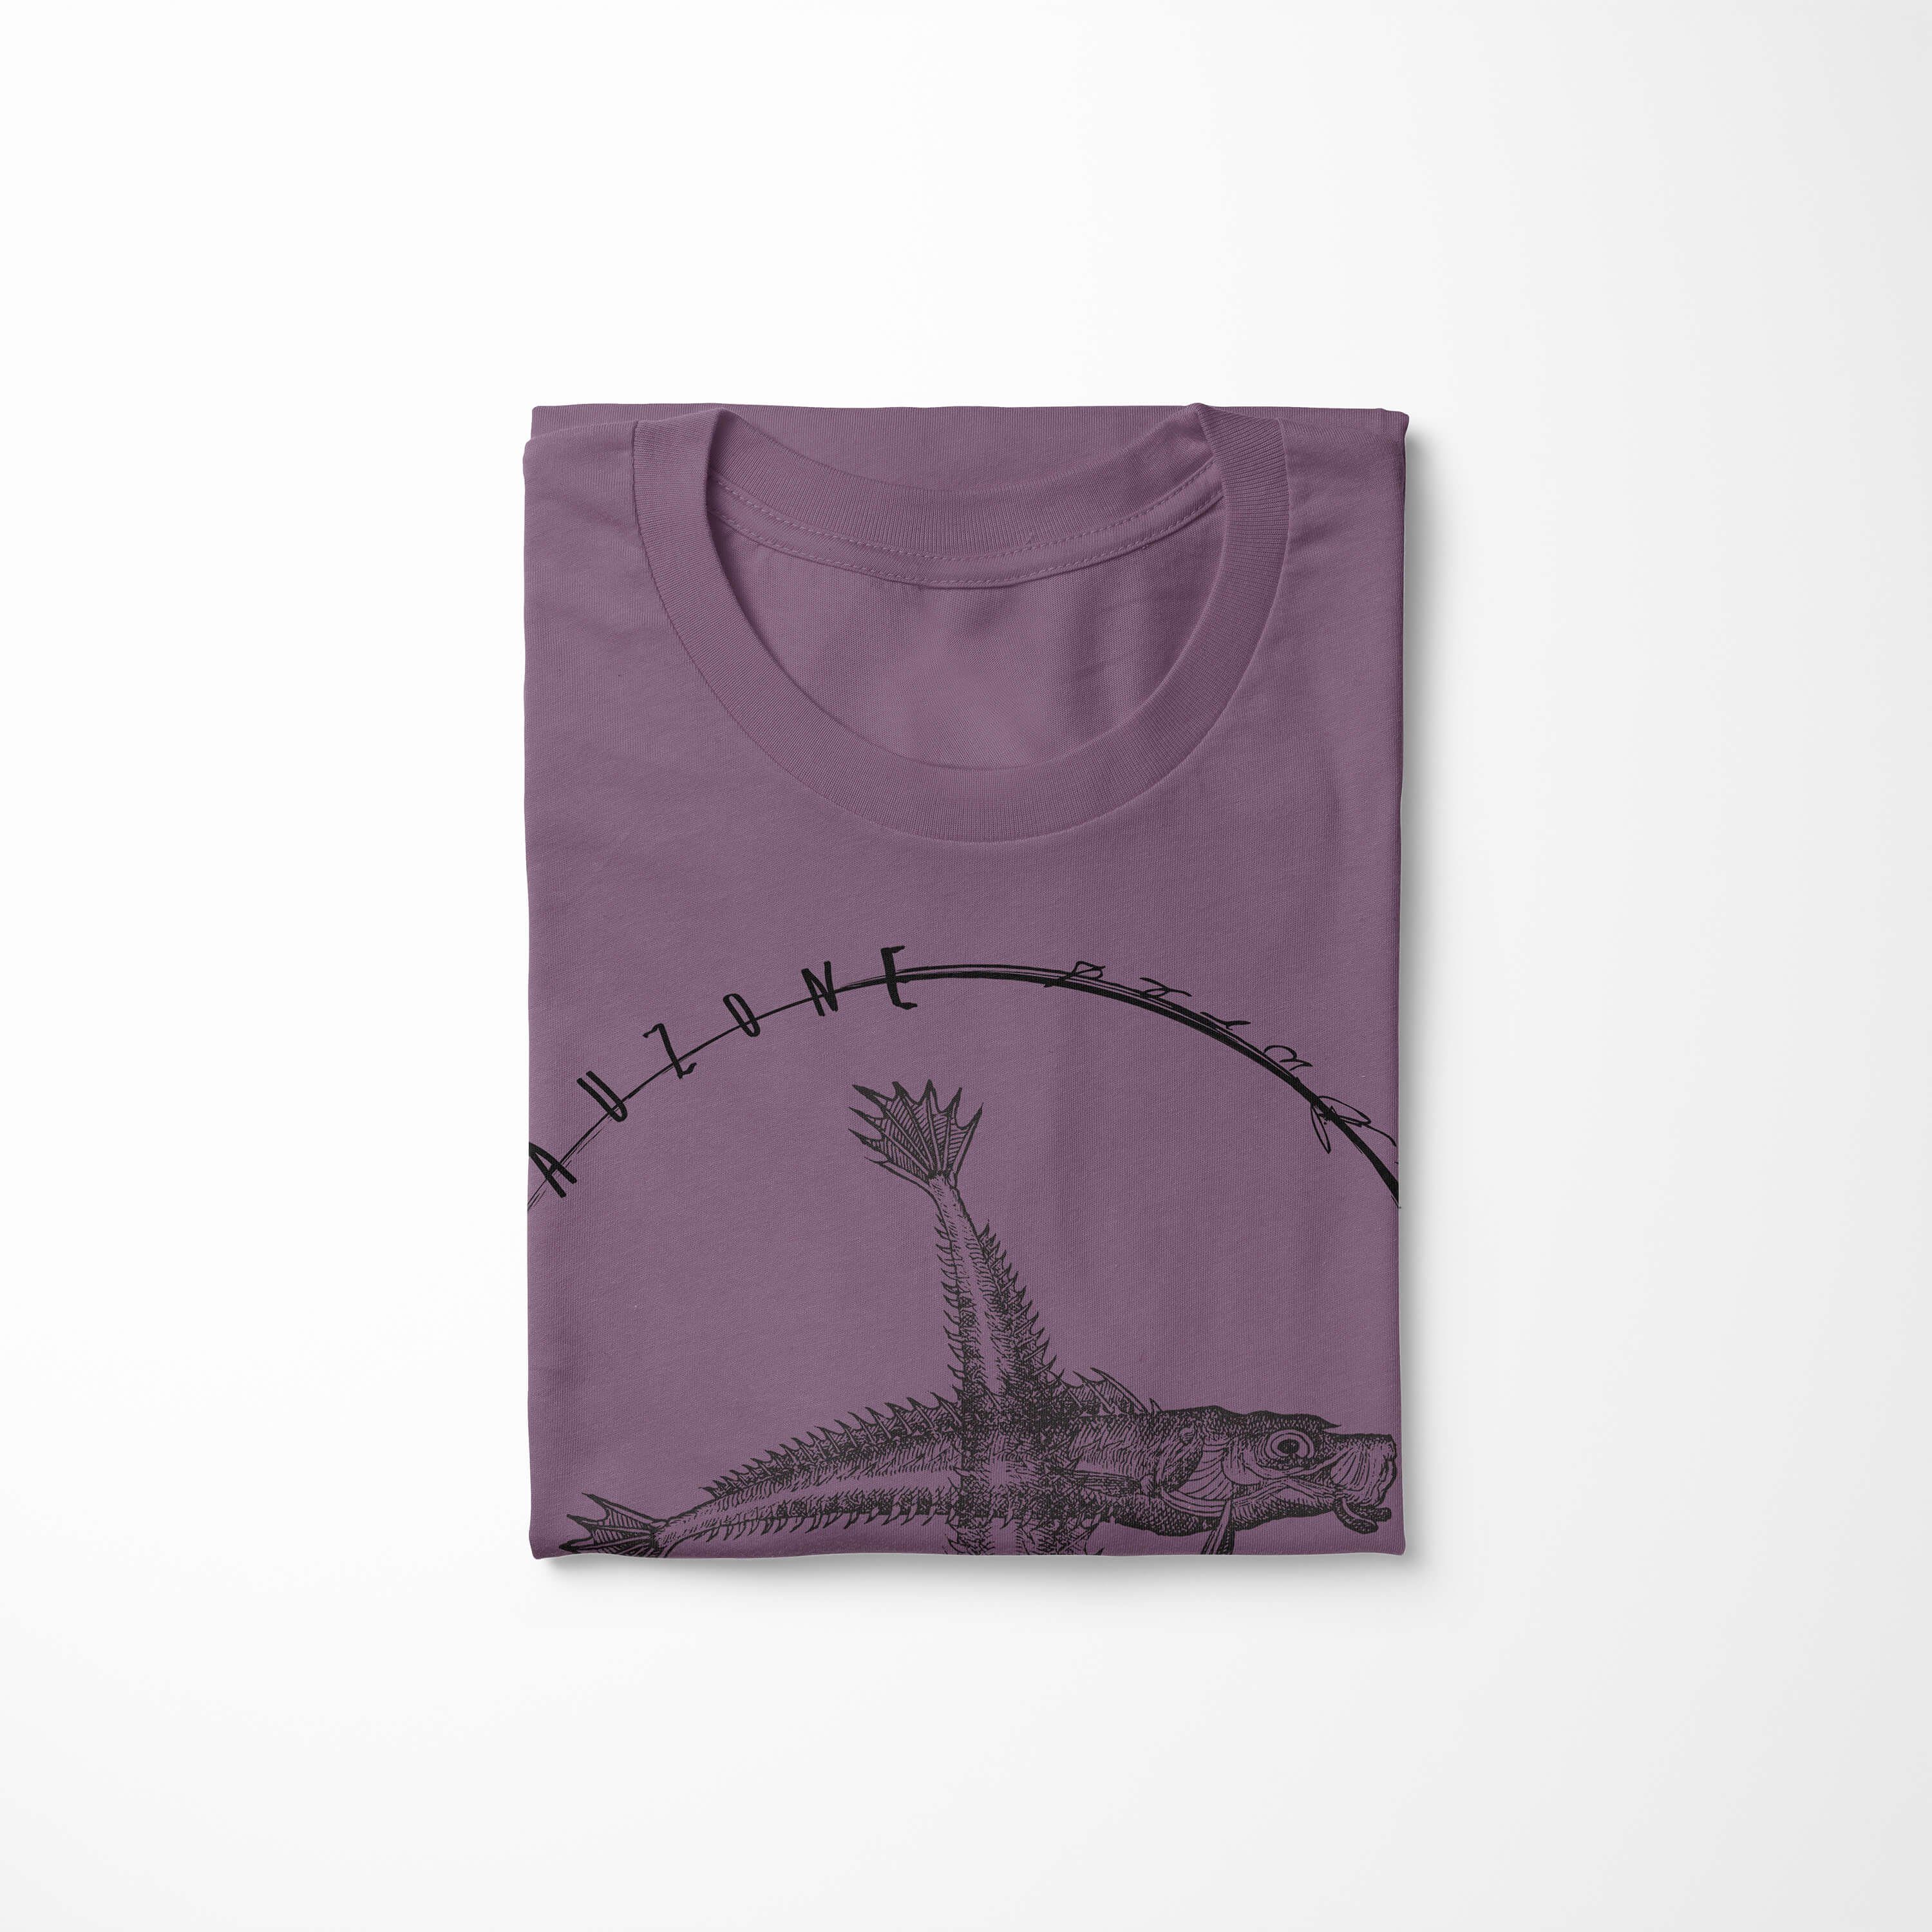 Sinus Art T-Shirt Schnitt sportlicher / Struktur - Tiefsee Serie: feine und T-Shirt Shiraz Fische Sea 074 Sea Creatures